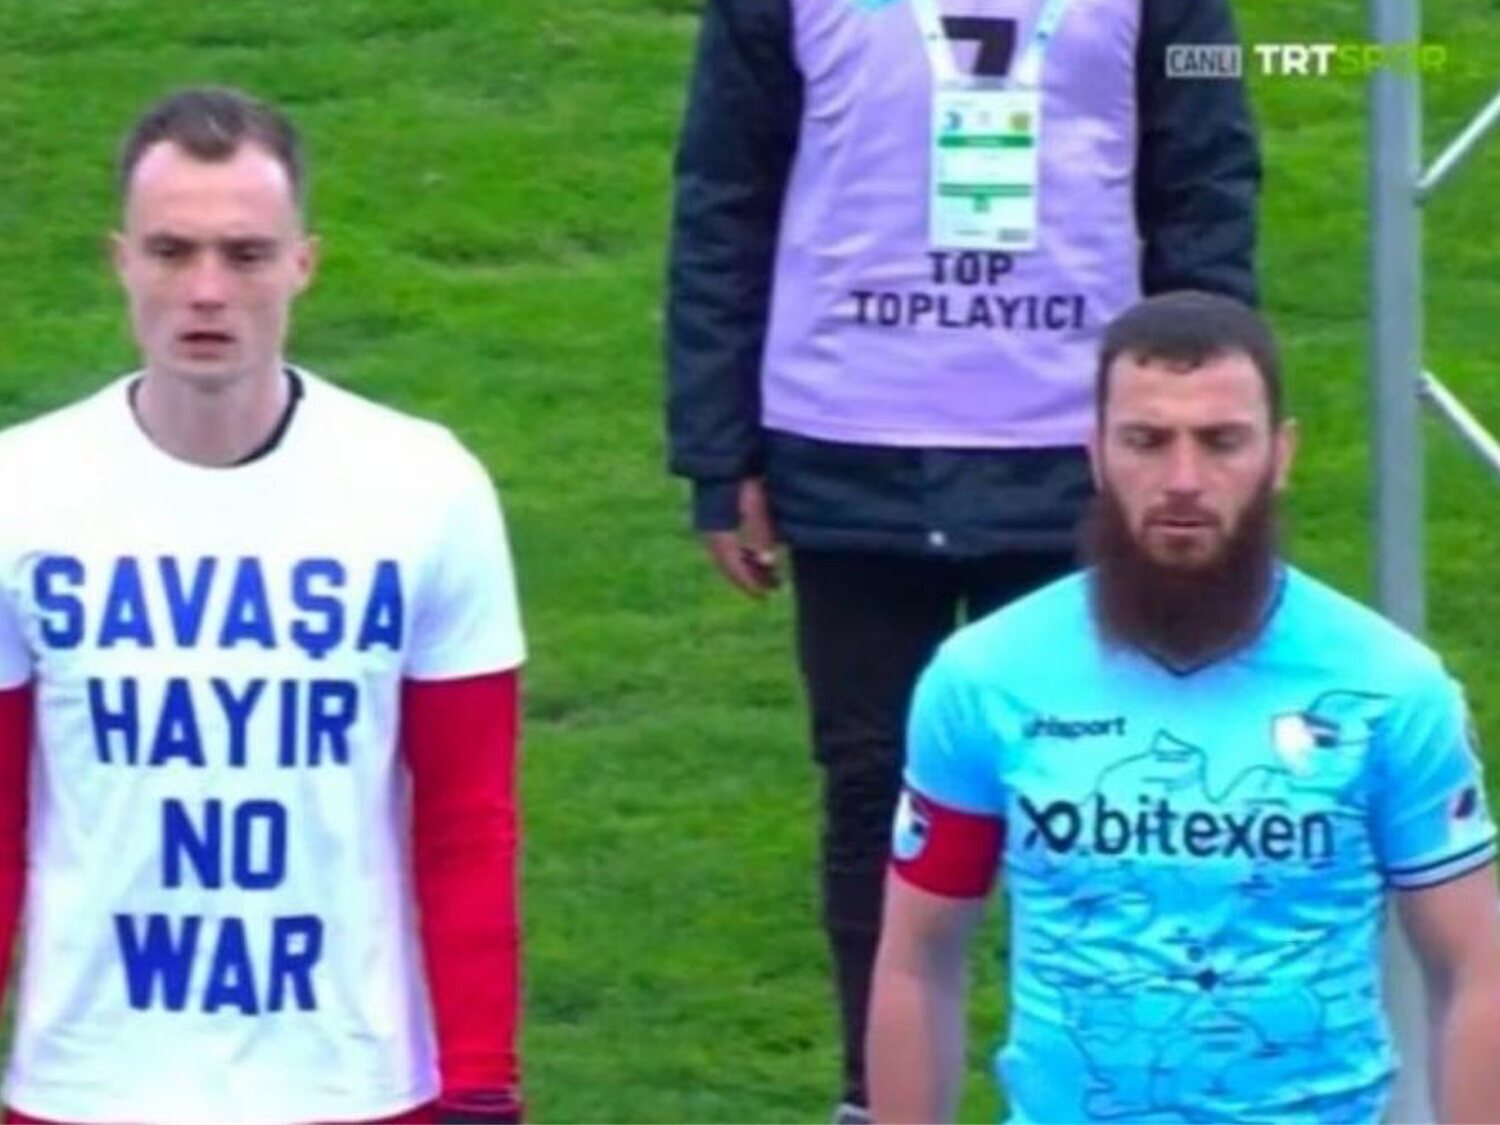 "Solo os duele Europa": el jugador turco que se ha negado a ponerse la camiseta de 'No a la guerra'